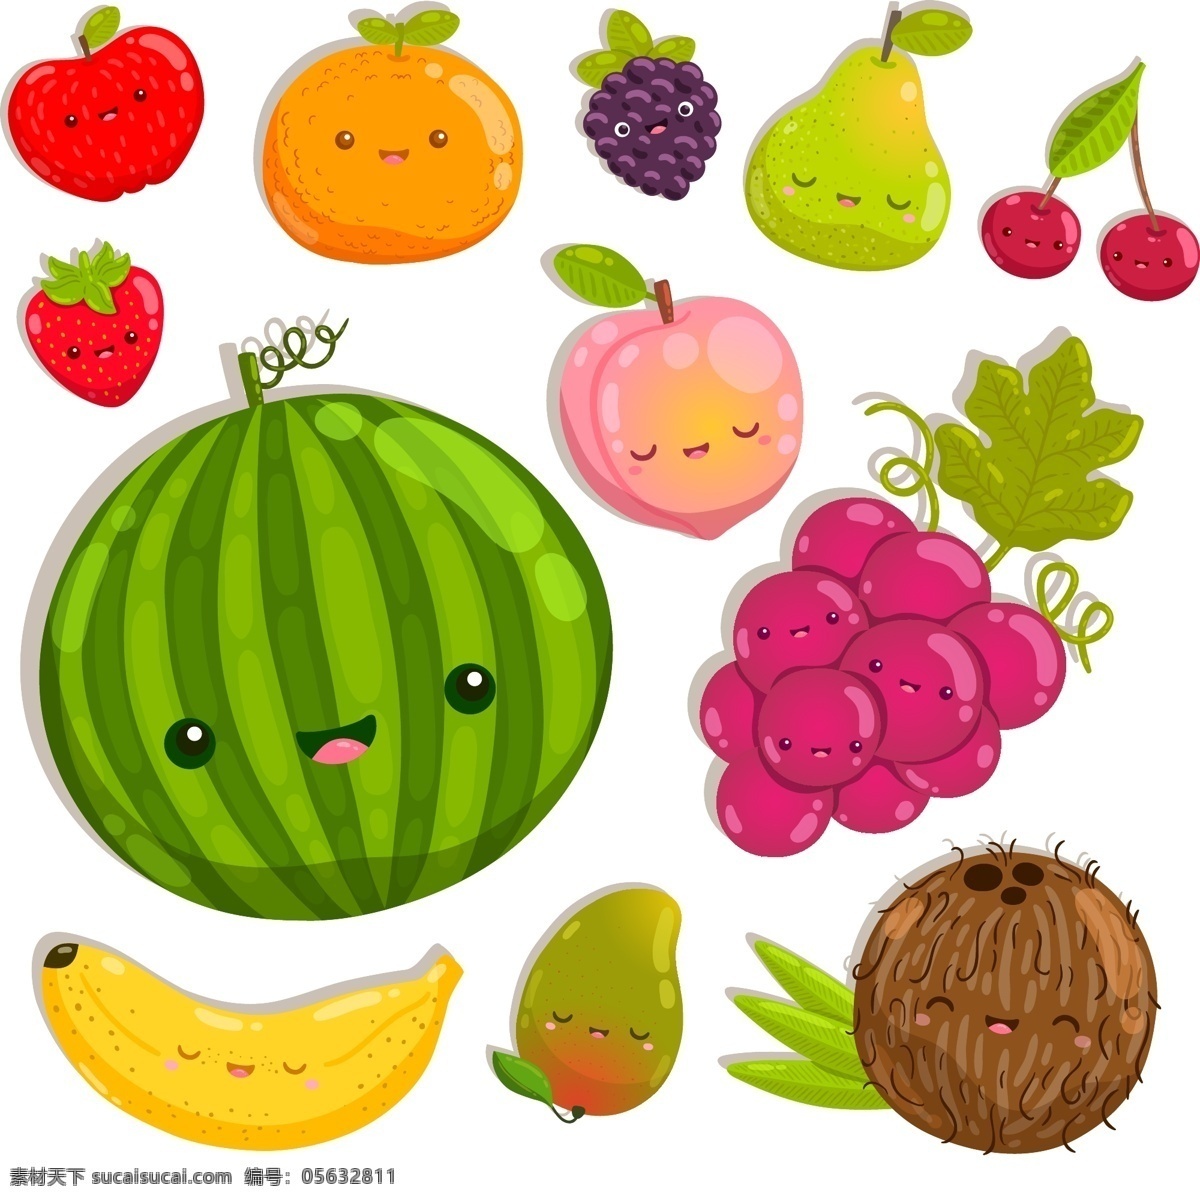 卡通水果图片 卡通水果 西瓜 香蕉 橘子 苹果 葡萄 樱桃 草莓 芒果 椰子 卡通人物